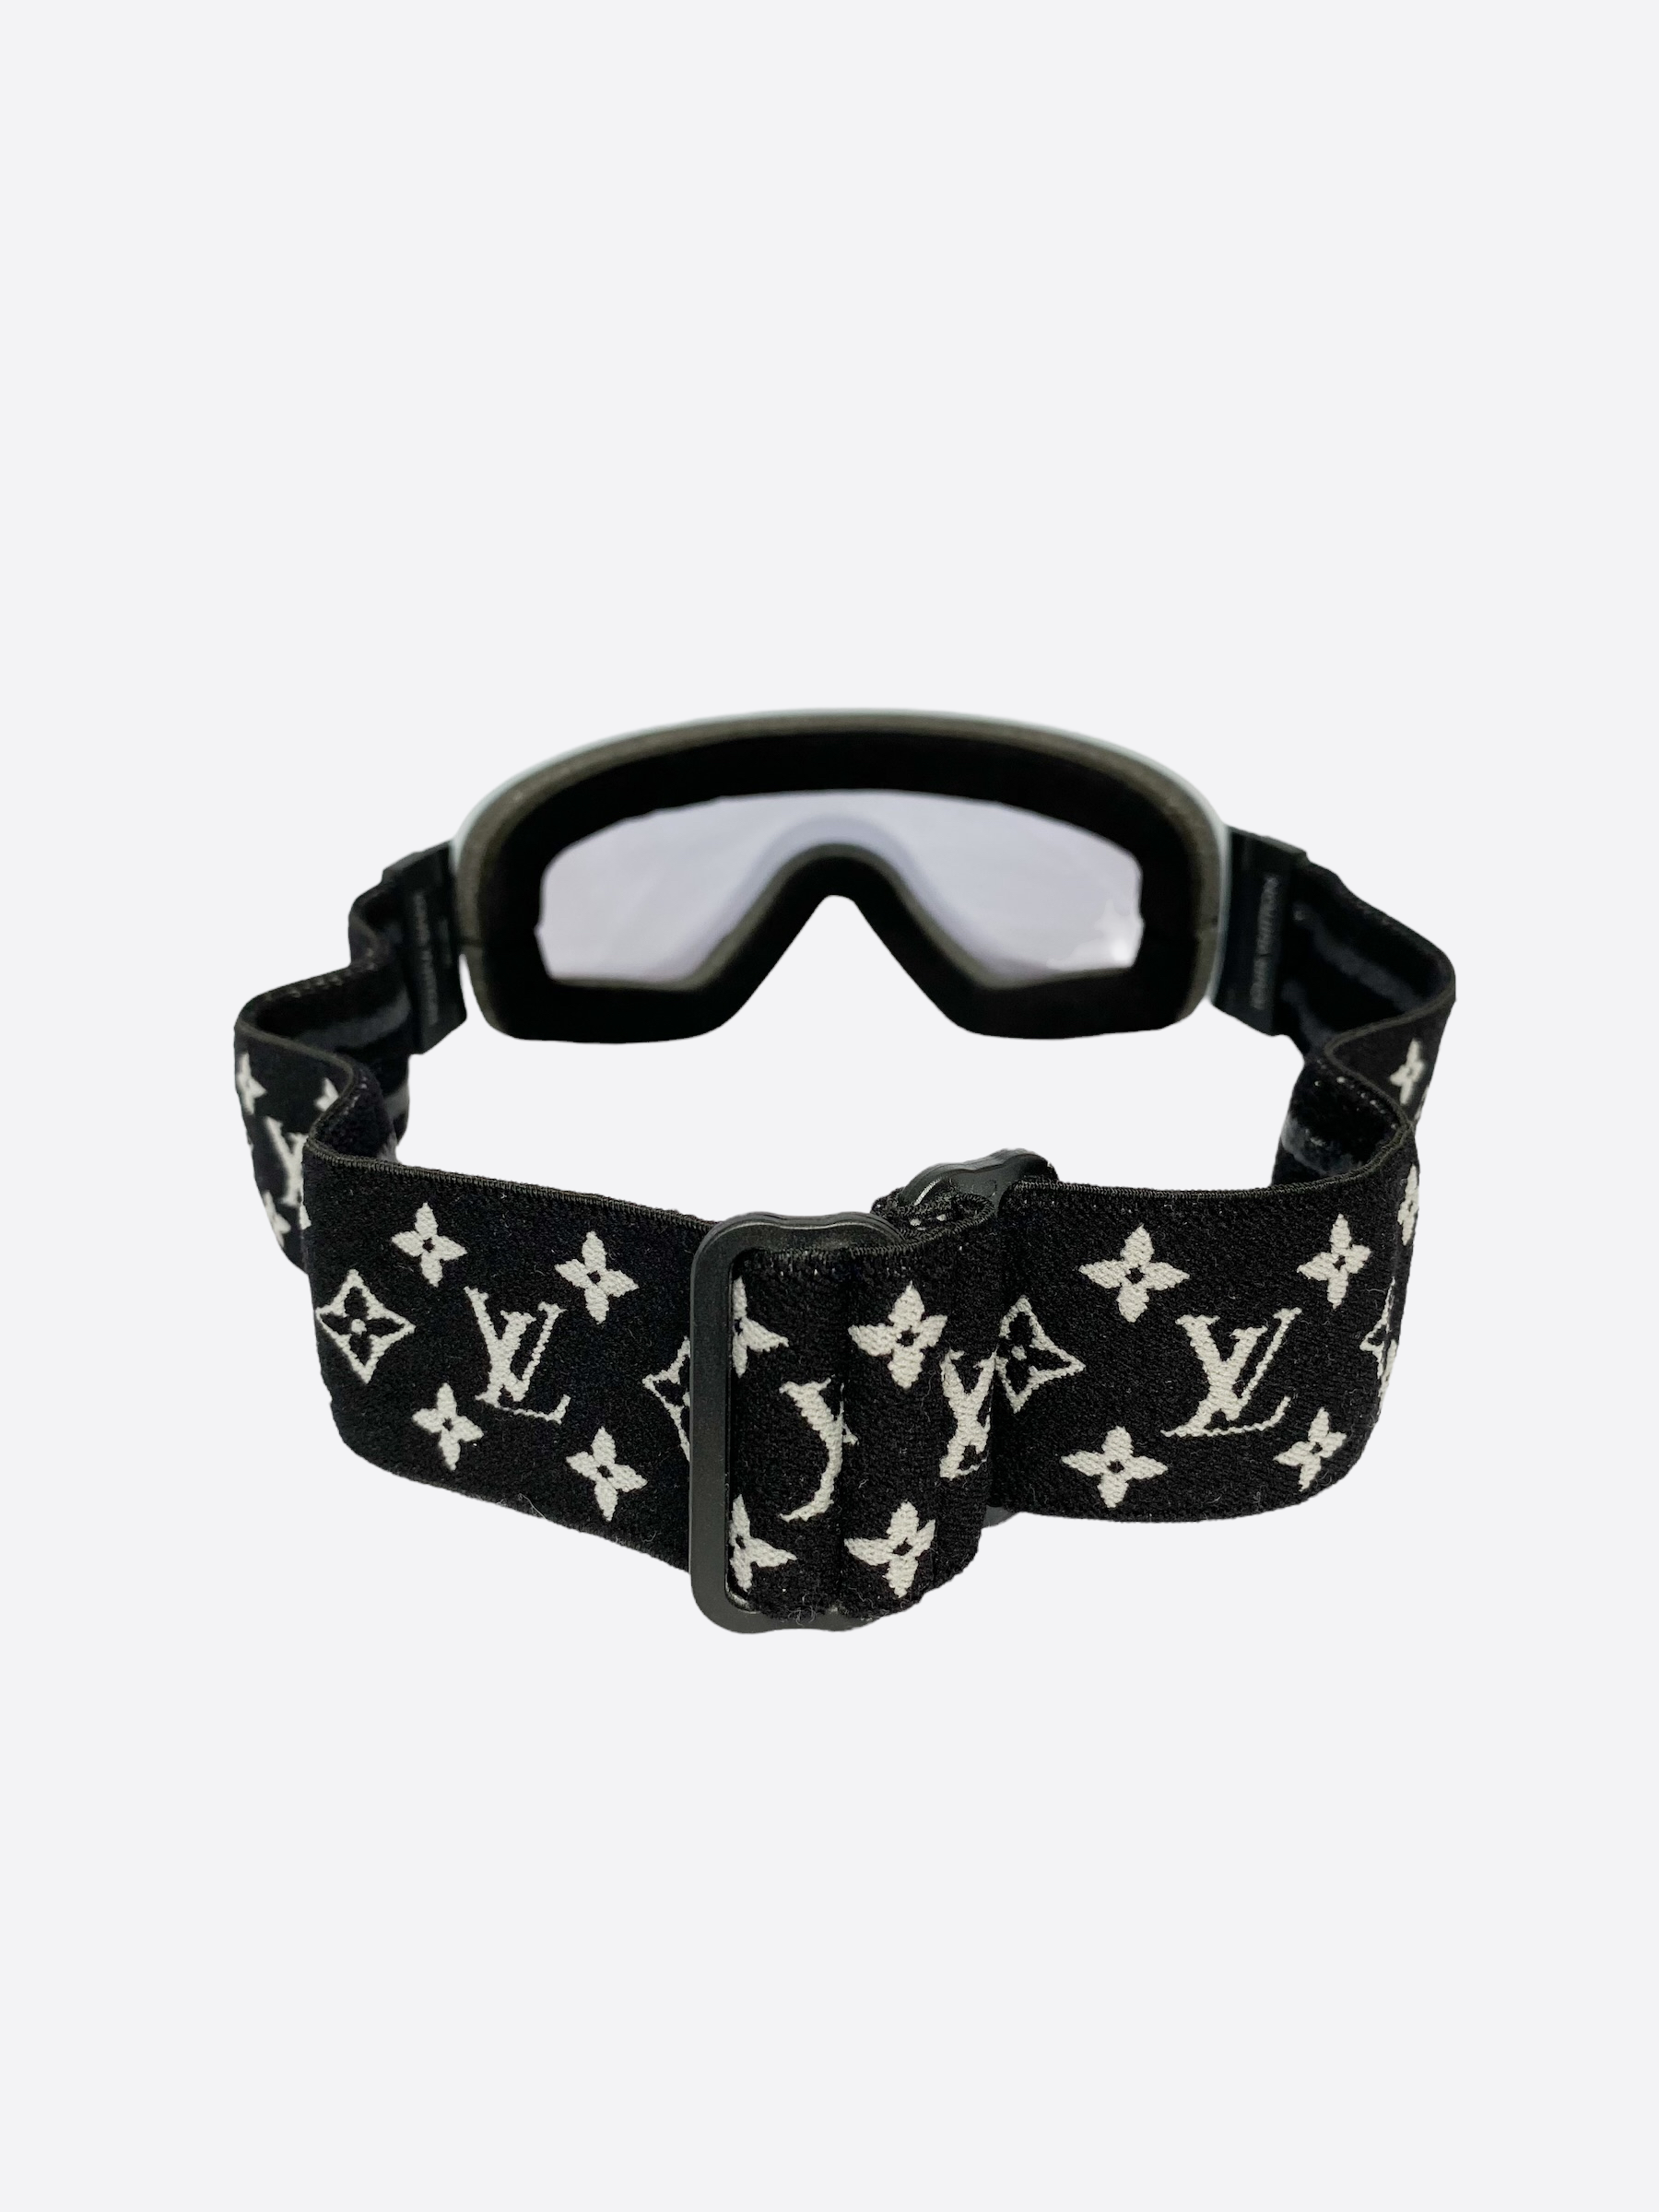 LV Monogram Black/White Ski Mask